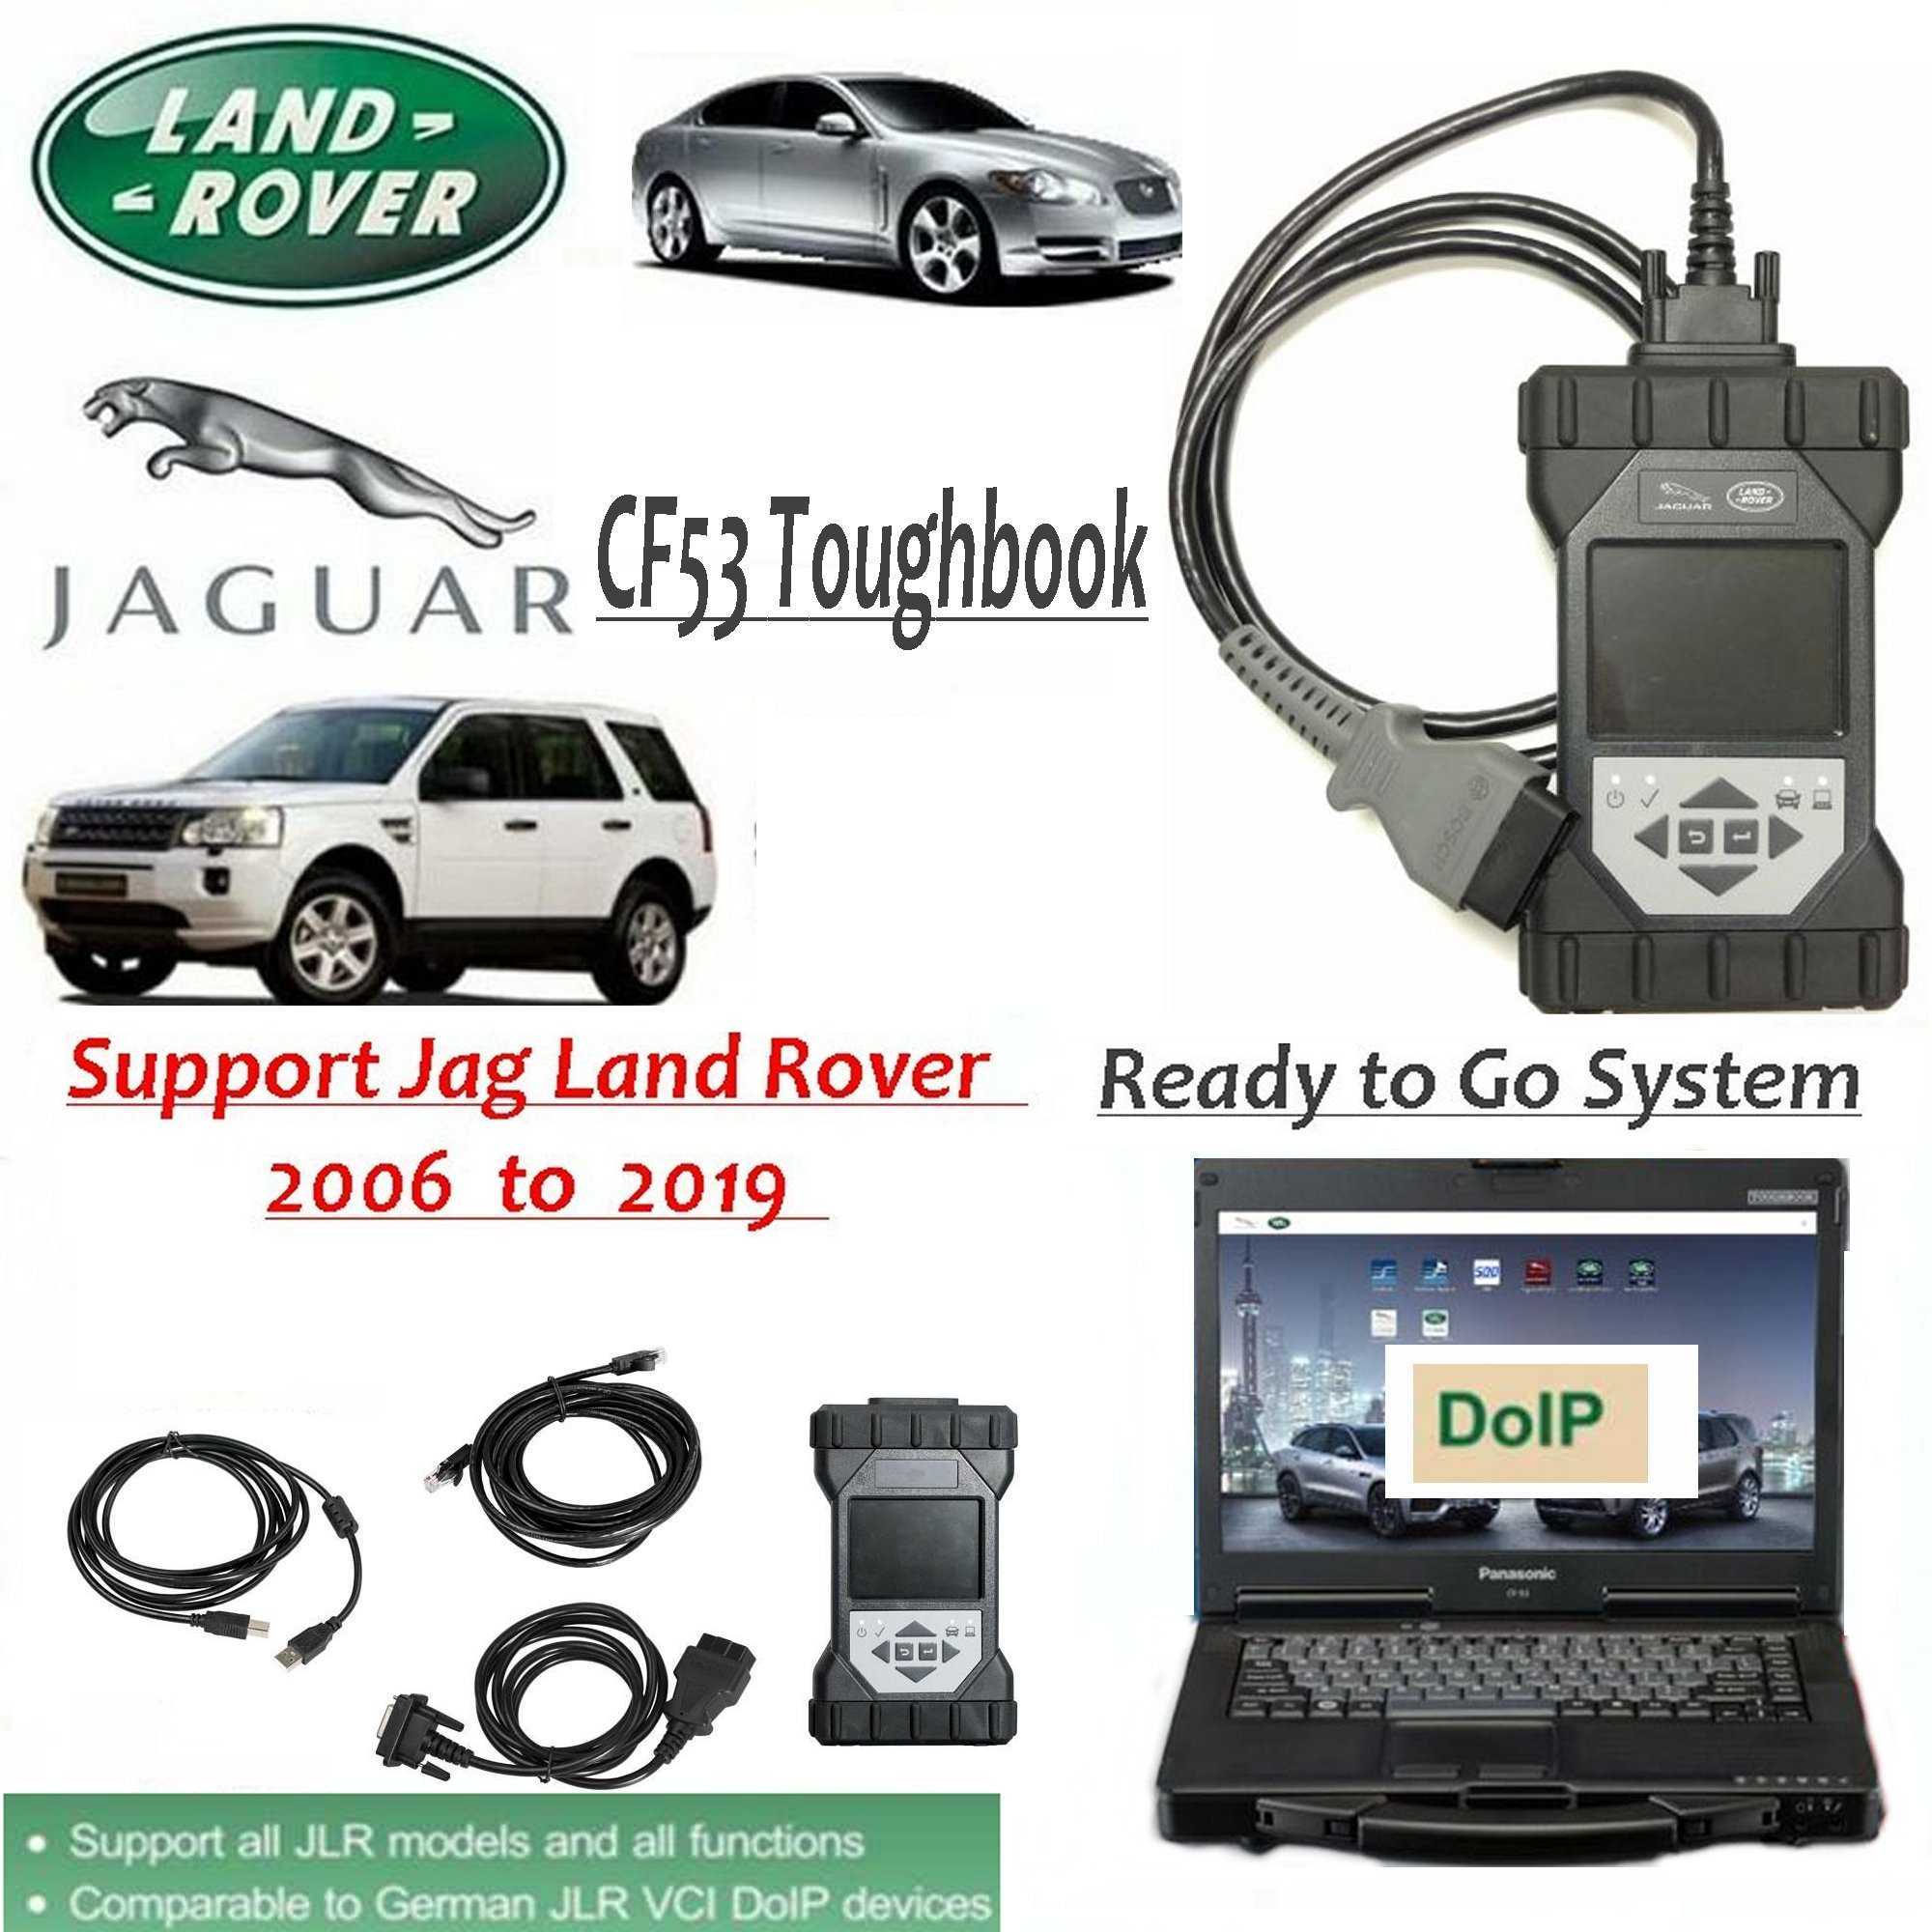 Jlr sdd 155: по для диагностики и ремонта автомобилей jaguar и land rover